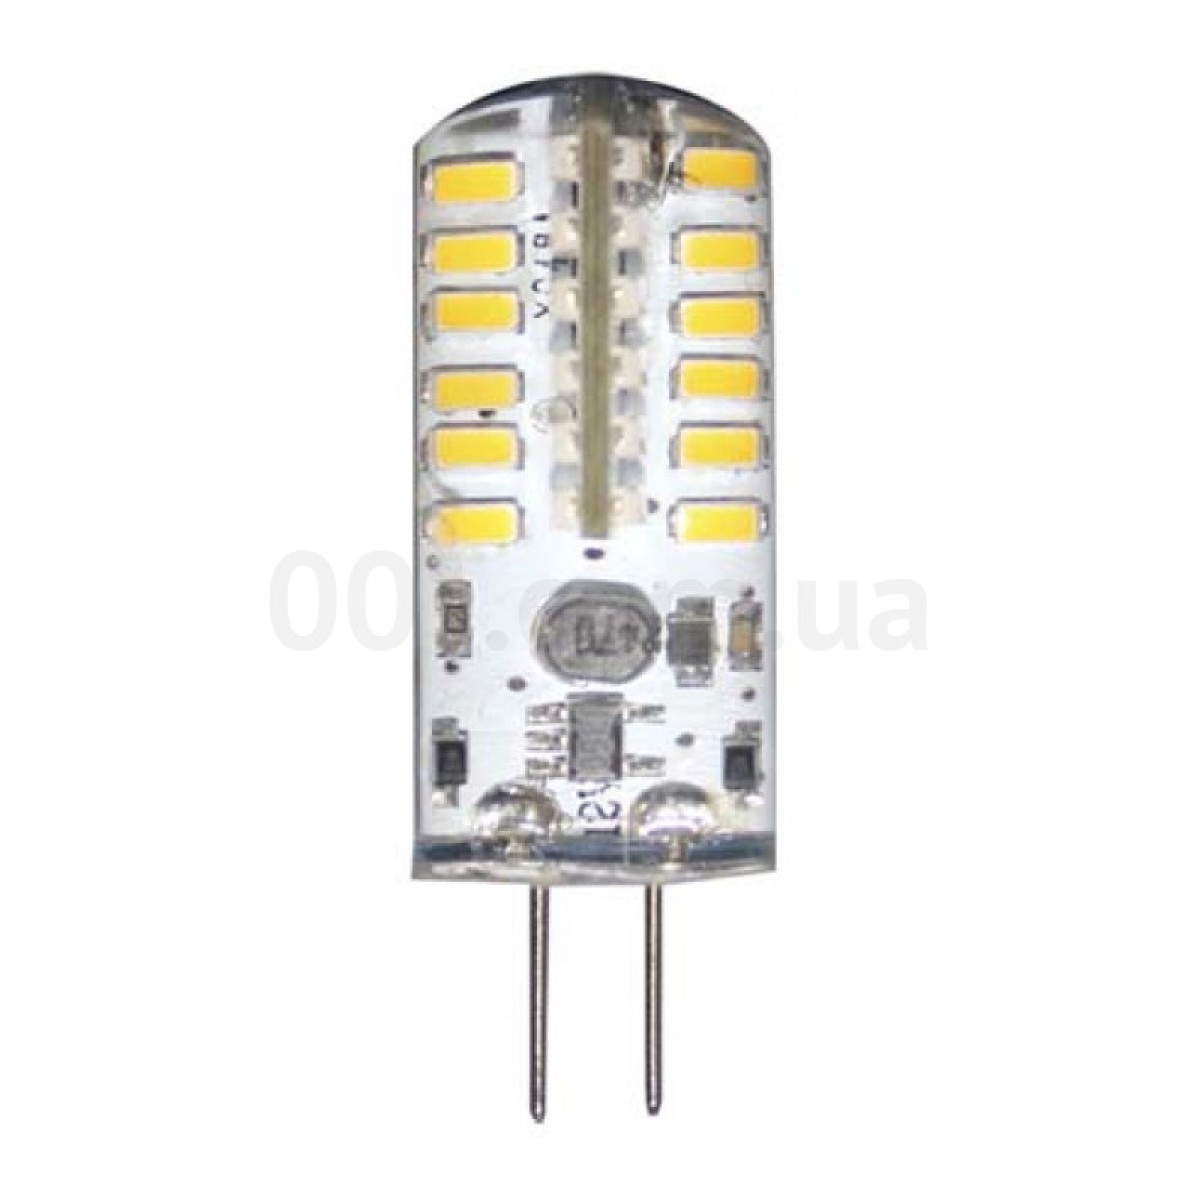 Светодиодная лампа LB-422 (капсула) 12В AC/DC 3Вт 4000K G4, Feron 98_98.jpg